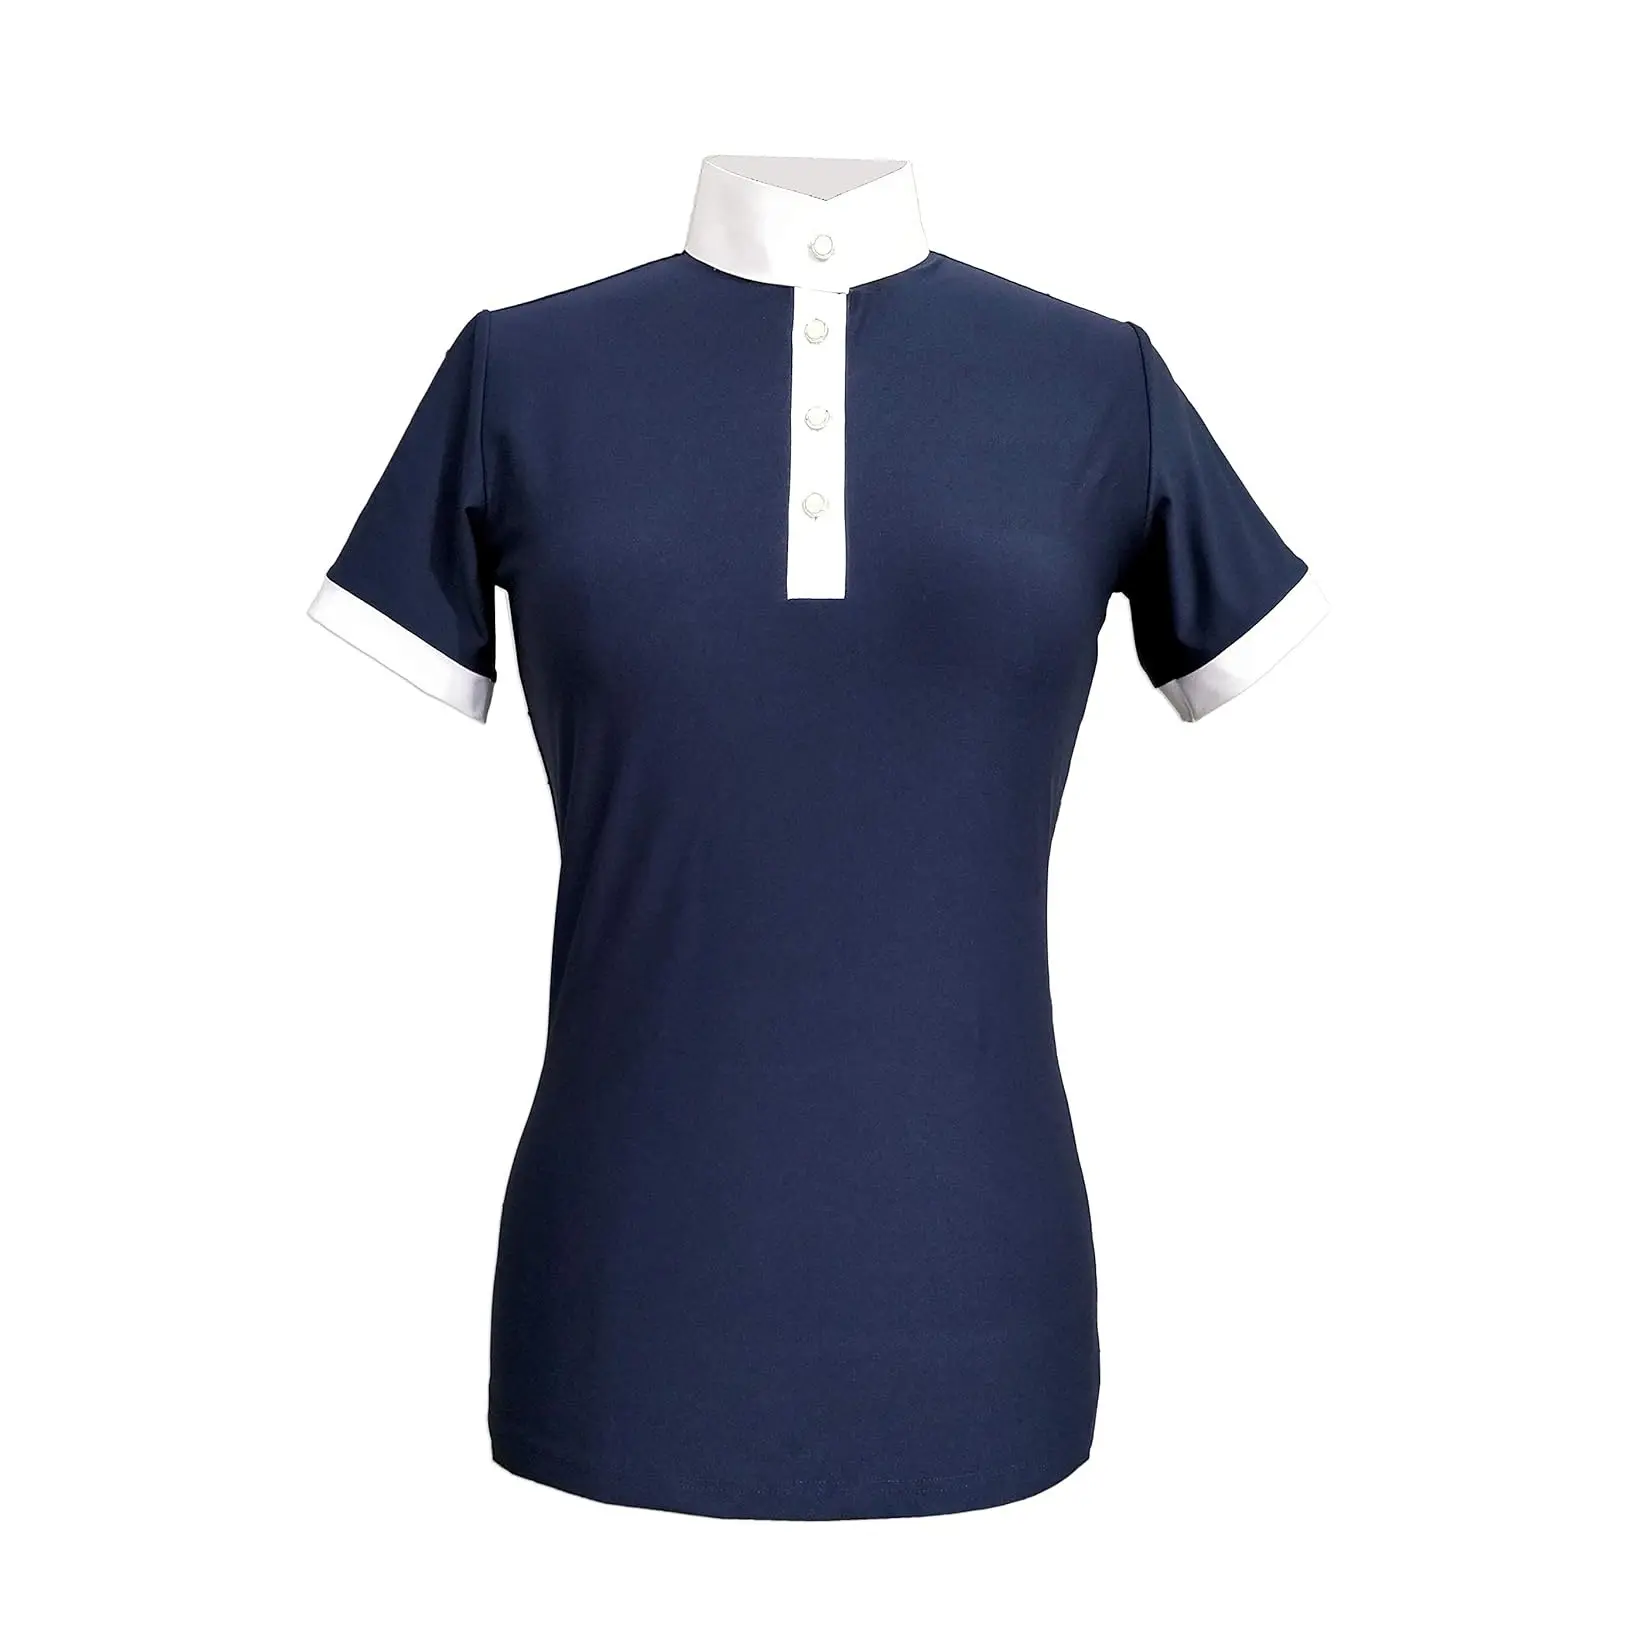 다이렉트 팩토리 공급 여성용 퀵 드라이 반소매 라이더 스포츠 썬 셔츠 인도에서 대량 가격으로 제공